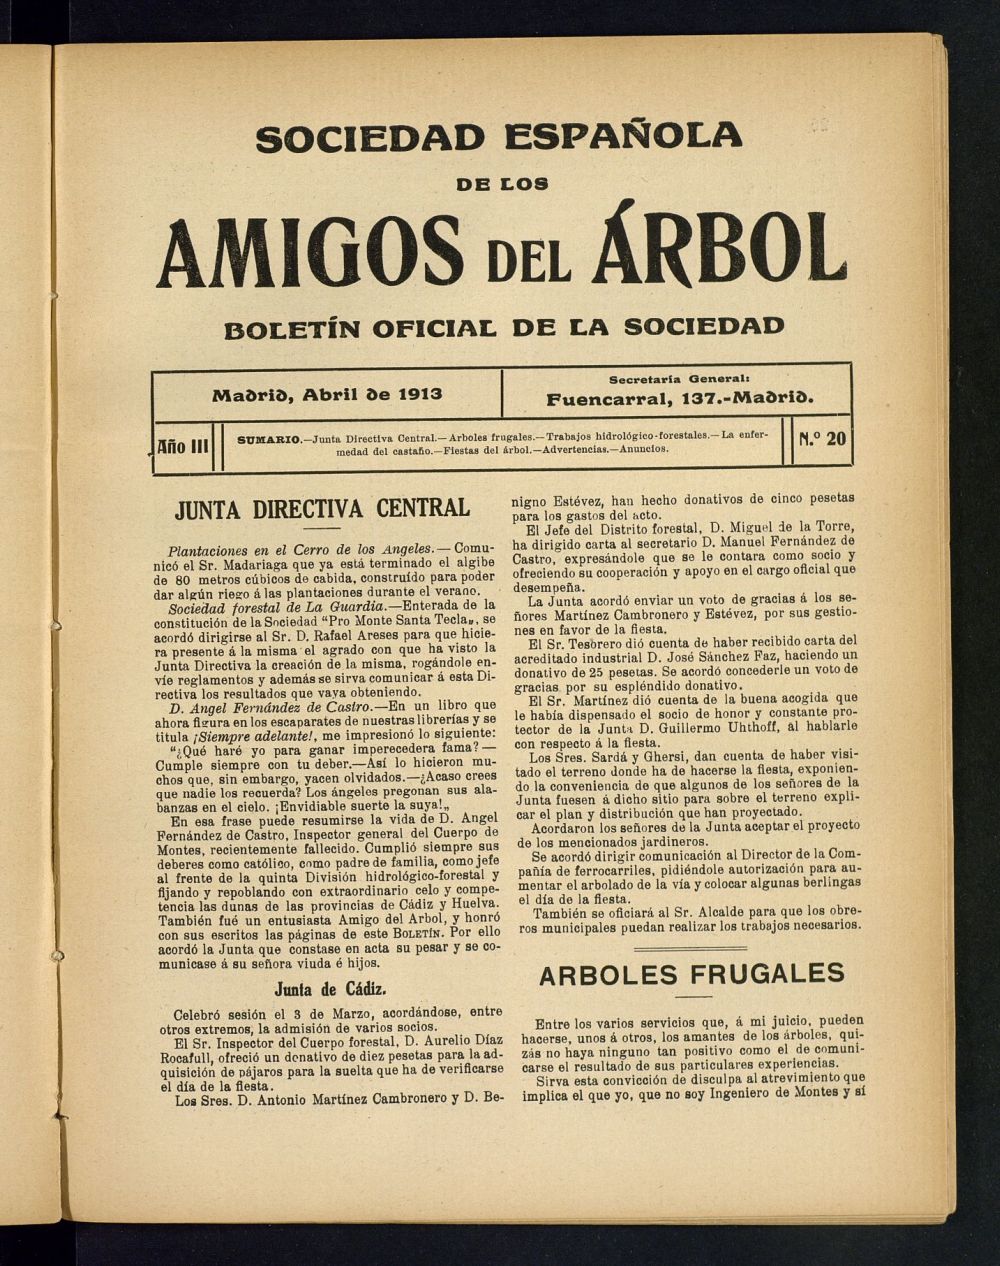 Boletn Comisin organizadora de la Sociedad Espaola de los amigos del rbol de abril de 1913